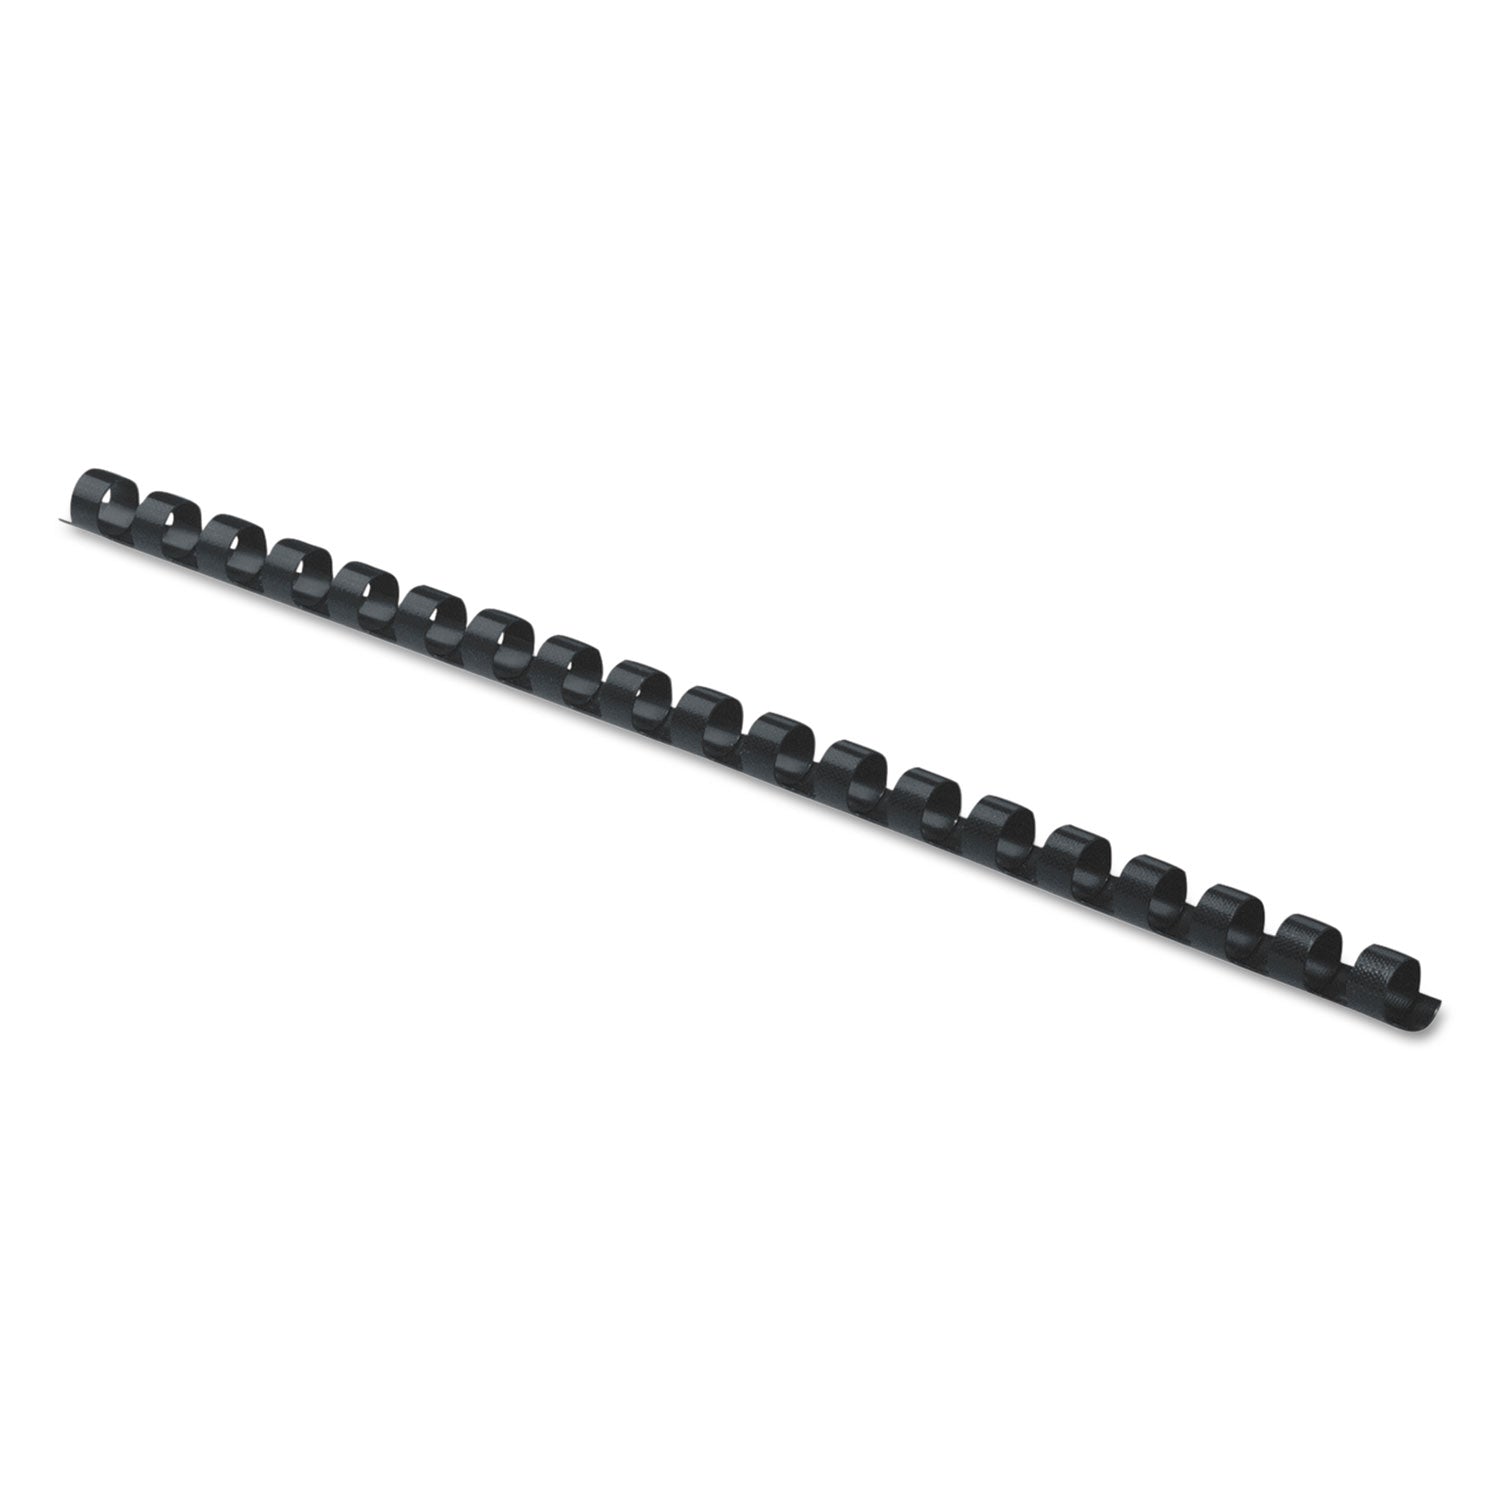 Plastic Comb Bindings, 1/4" Diameter, 20 Sheet Capacity, Black, 25/Pack - 